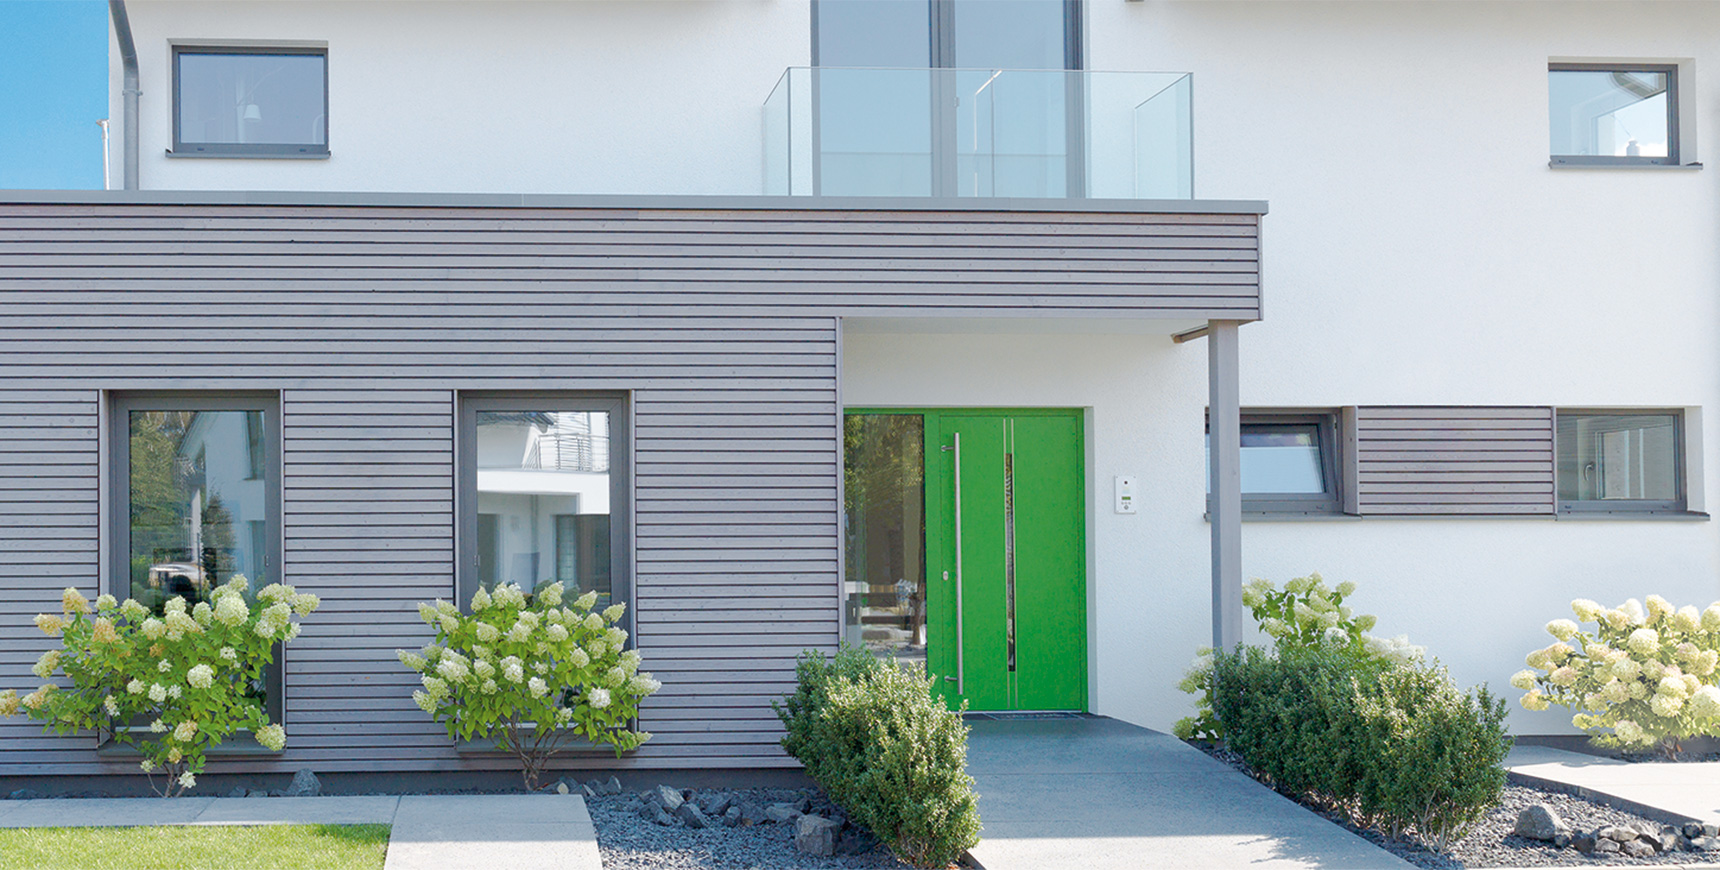 Einfamilienhaus mit grüner Haustür, Motorische Mehrfach-Verriegelungen von FUHR für Haustüren und Objekttüren: Vollmotorische, selbstständige Türverriegelungen mit Schnittstelle für SmartHome-Zutrittssystemen. 